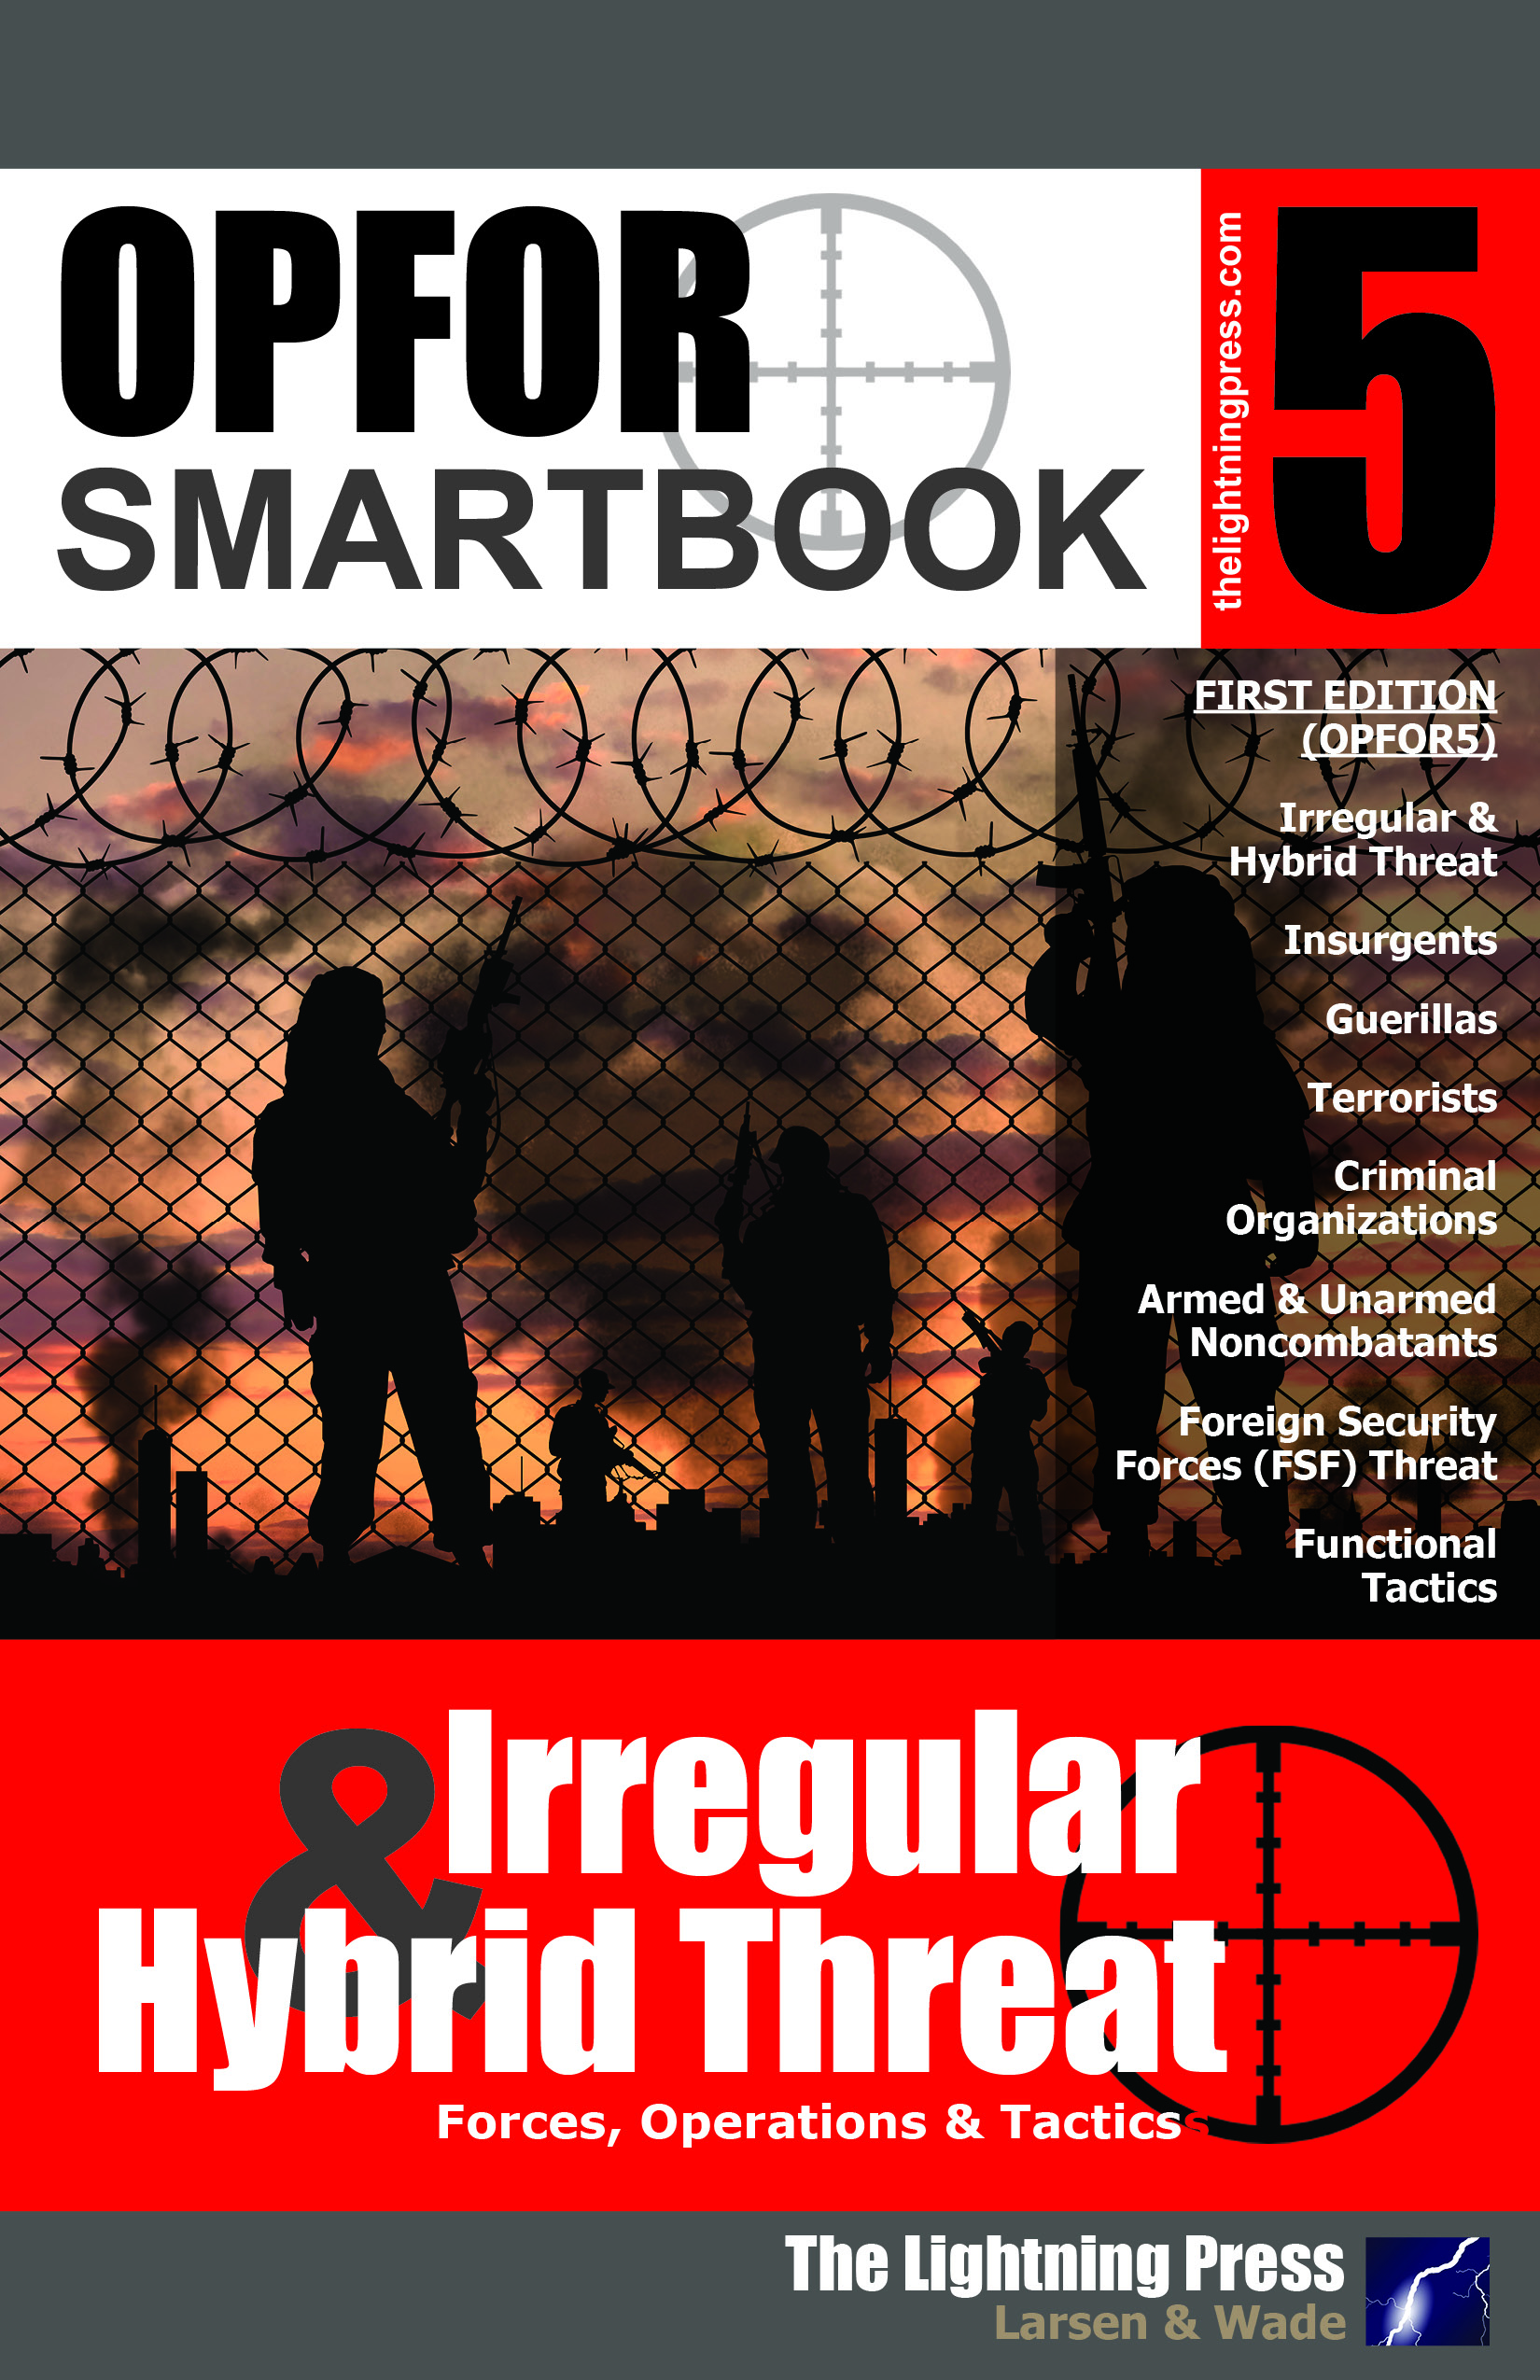 OPFOR SMARTbook 5 - Irregular & Hybrid Threat